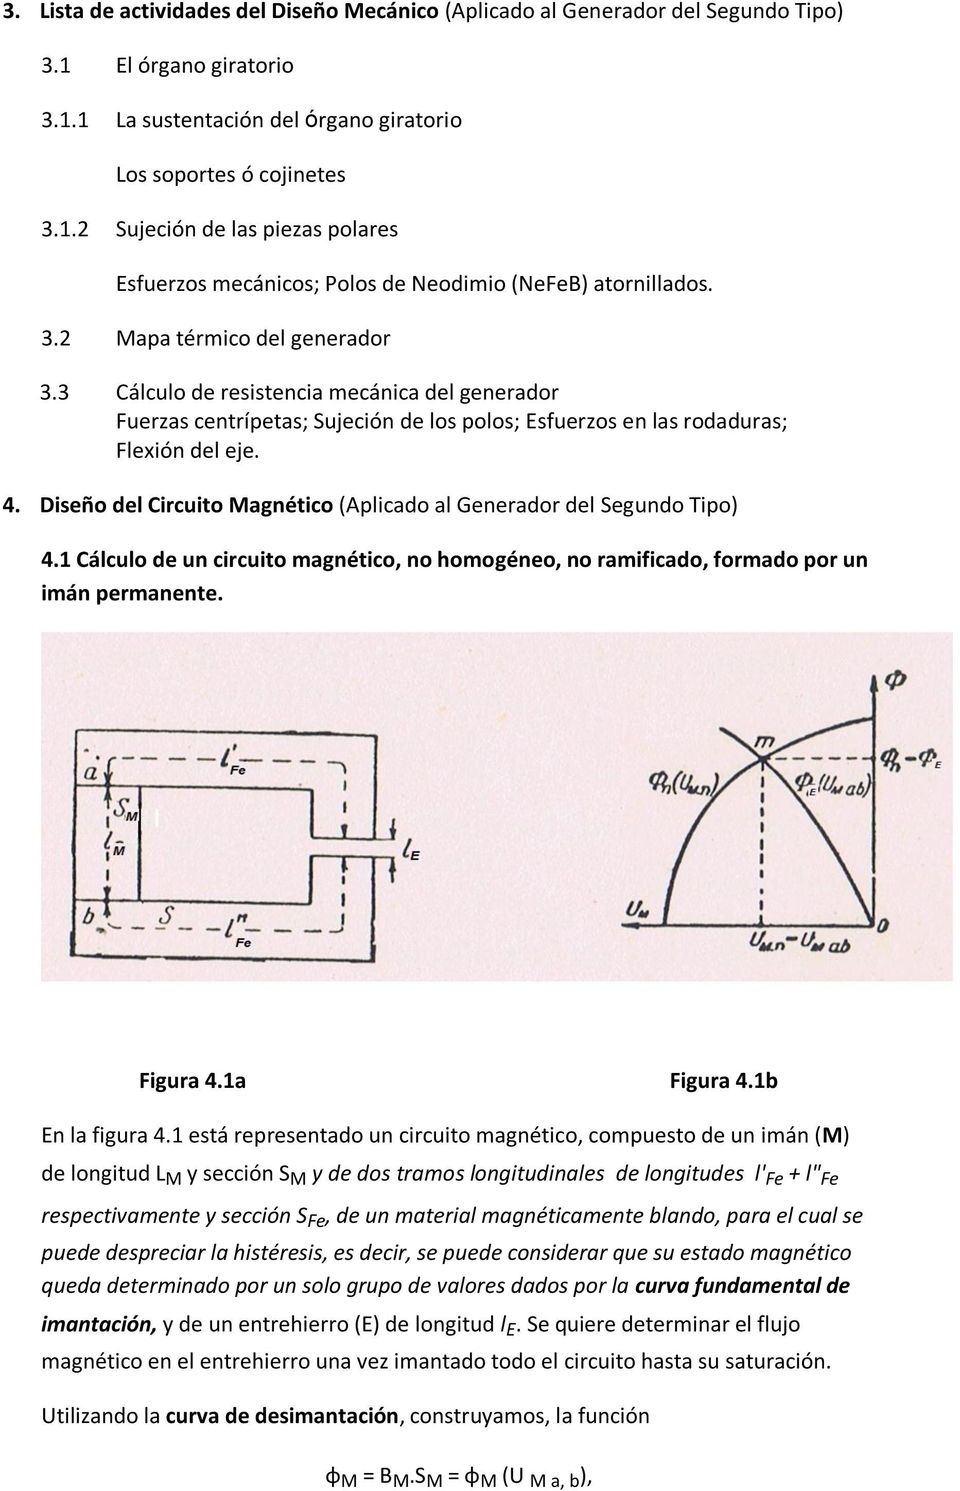 Diseño del Circuito Magnético (Aplicado al Generador del Segundo Tipo) 4.1 Cálculo de un circuito magnético, no homogéneo, no ramificado, formado por un imán permanente. Figura 4.1a Figura 4.